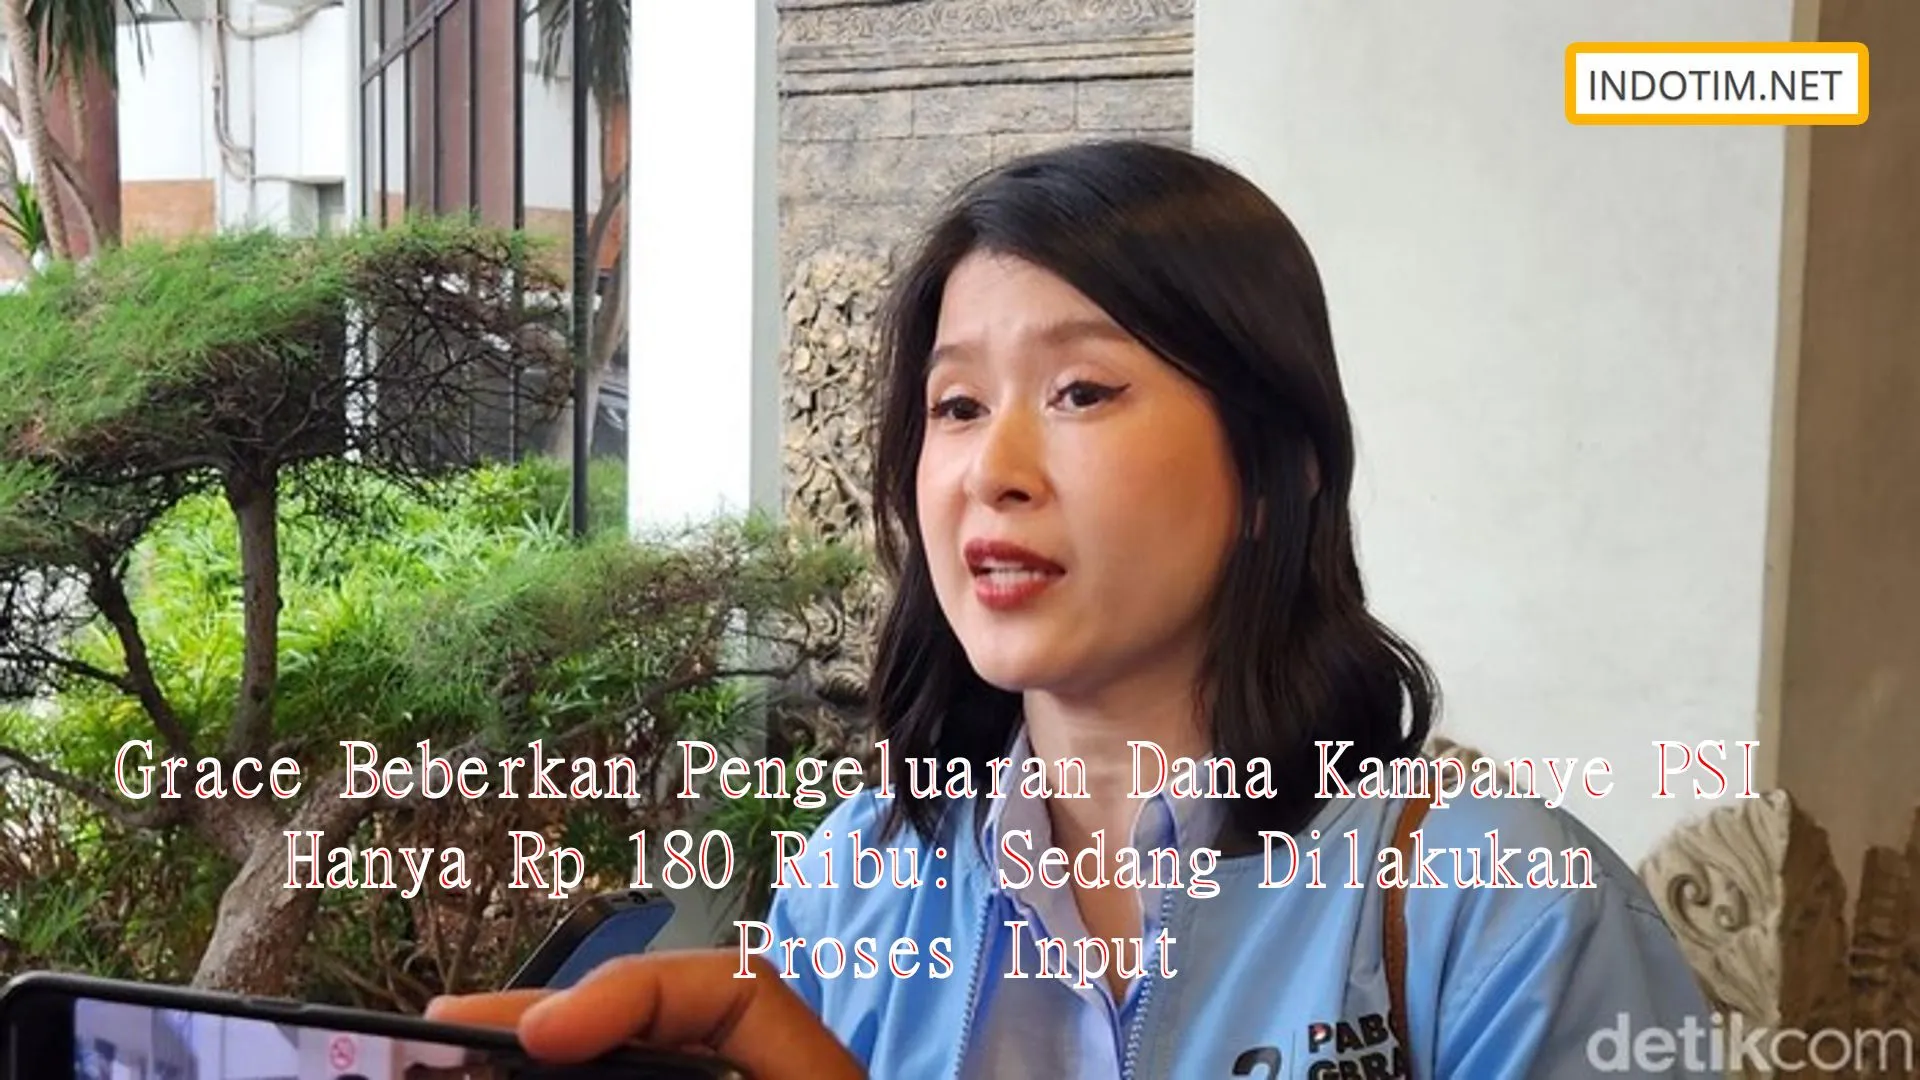 Grace Beberkan Pengeluaran Dana Kampanye PSI Hanya Rp 180 Ribu: Sedang Dilakukan Proses Input